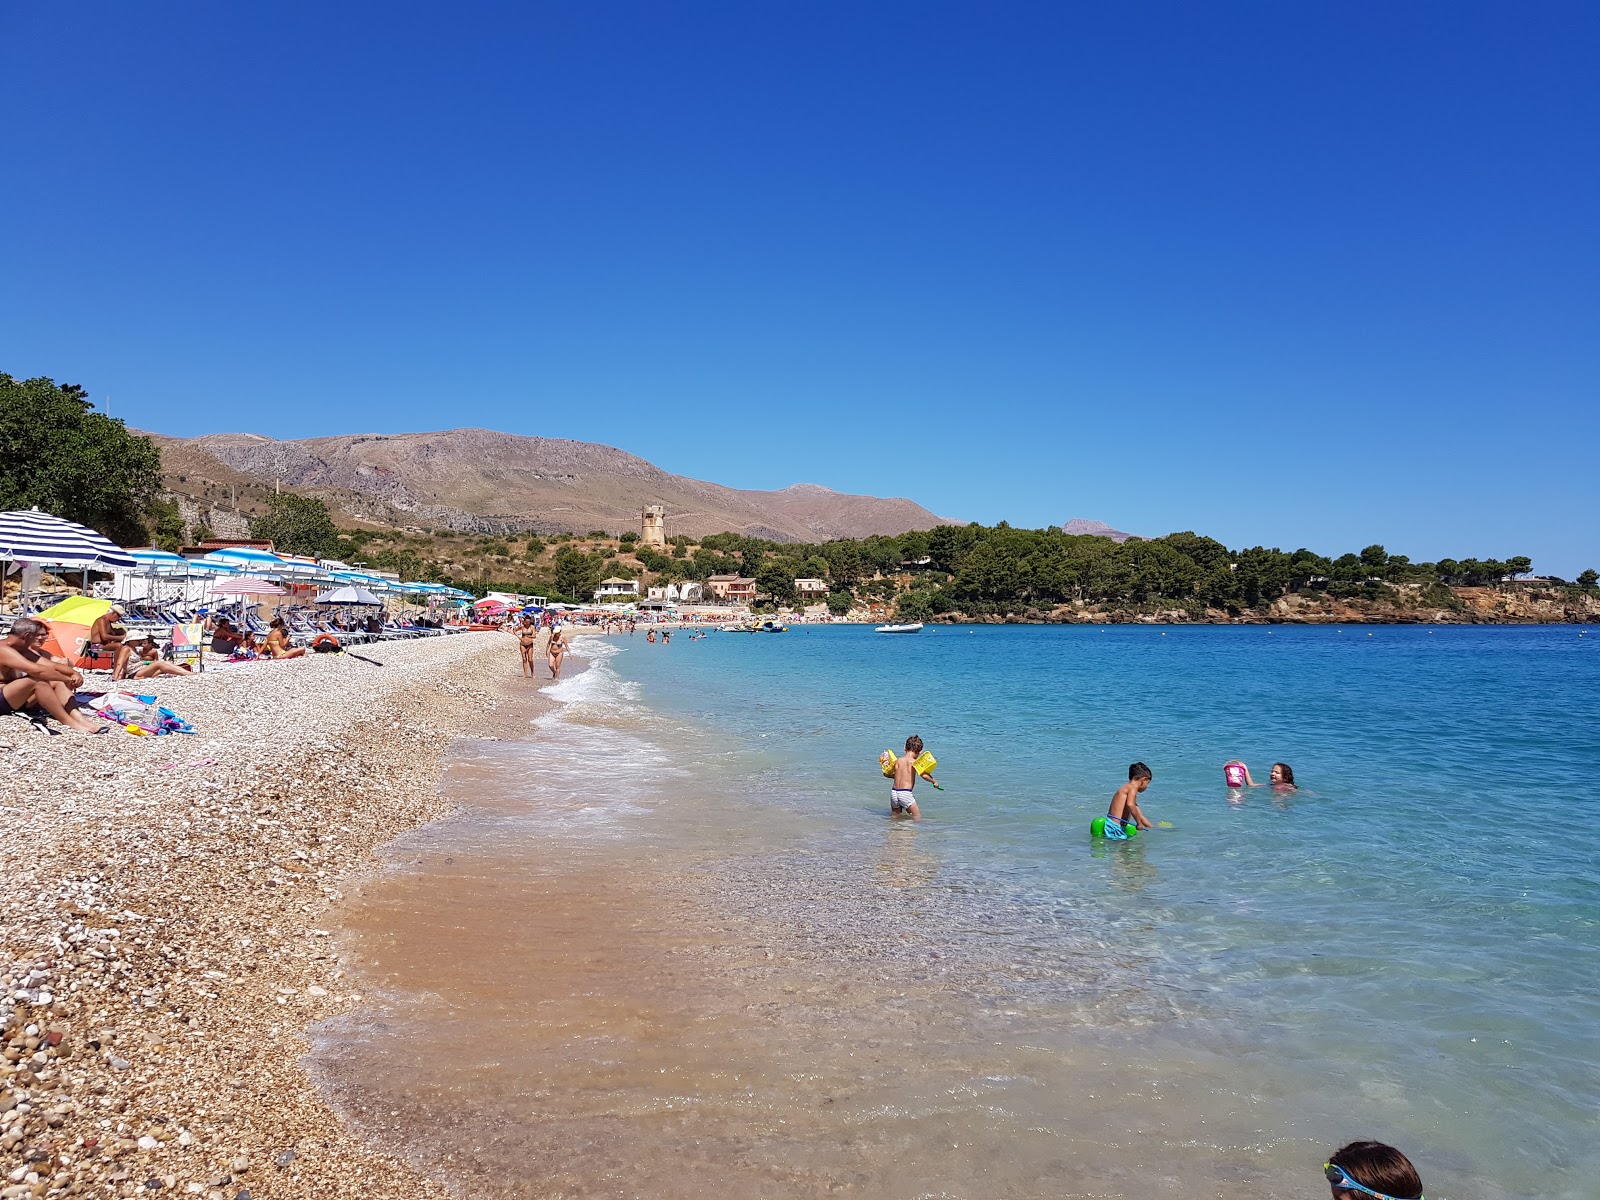 Guidaloca Plajı'in fotoğrafı hafif çakıl yüzey ile